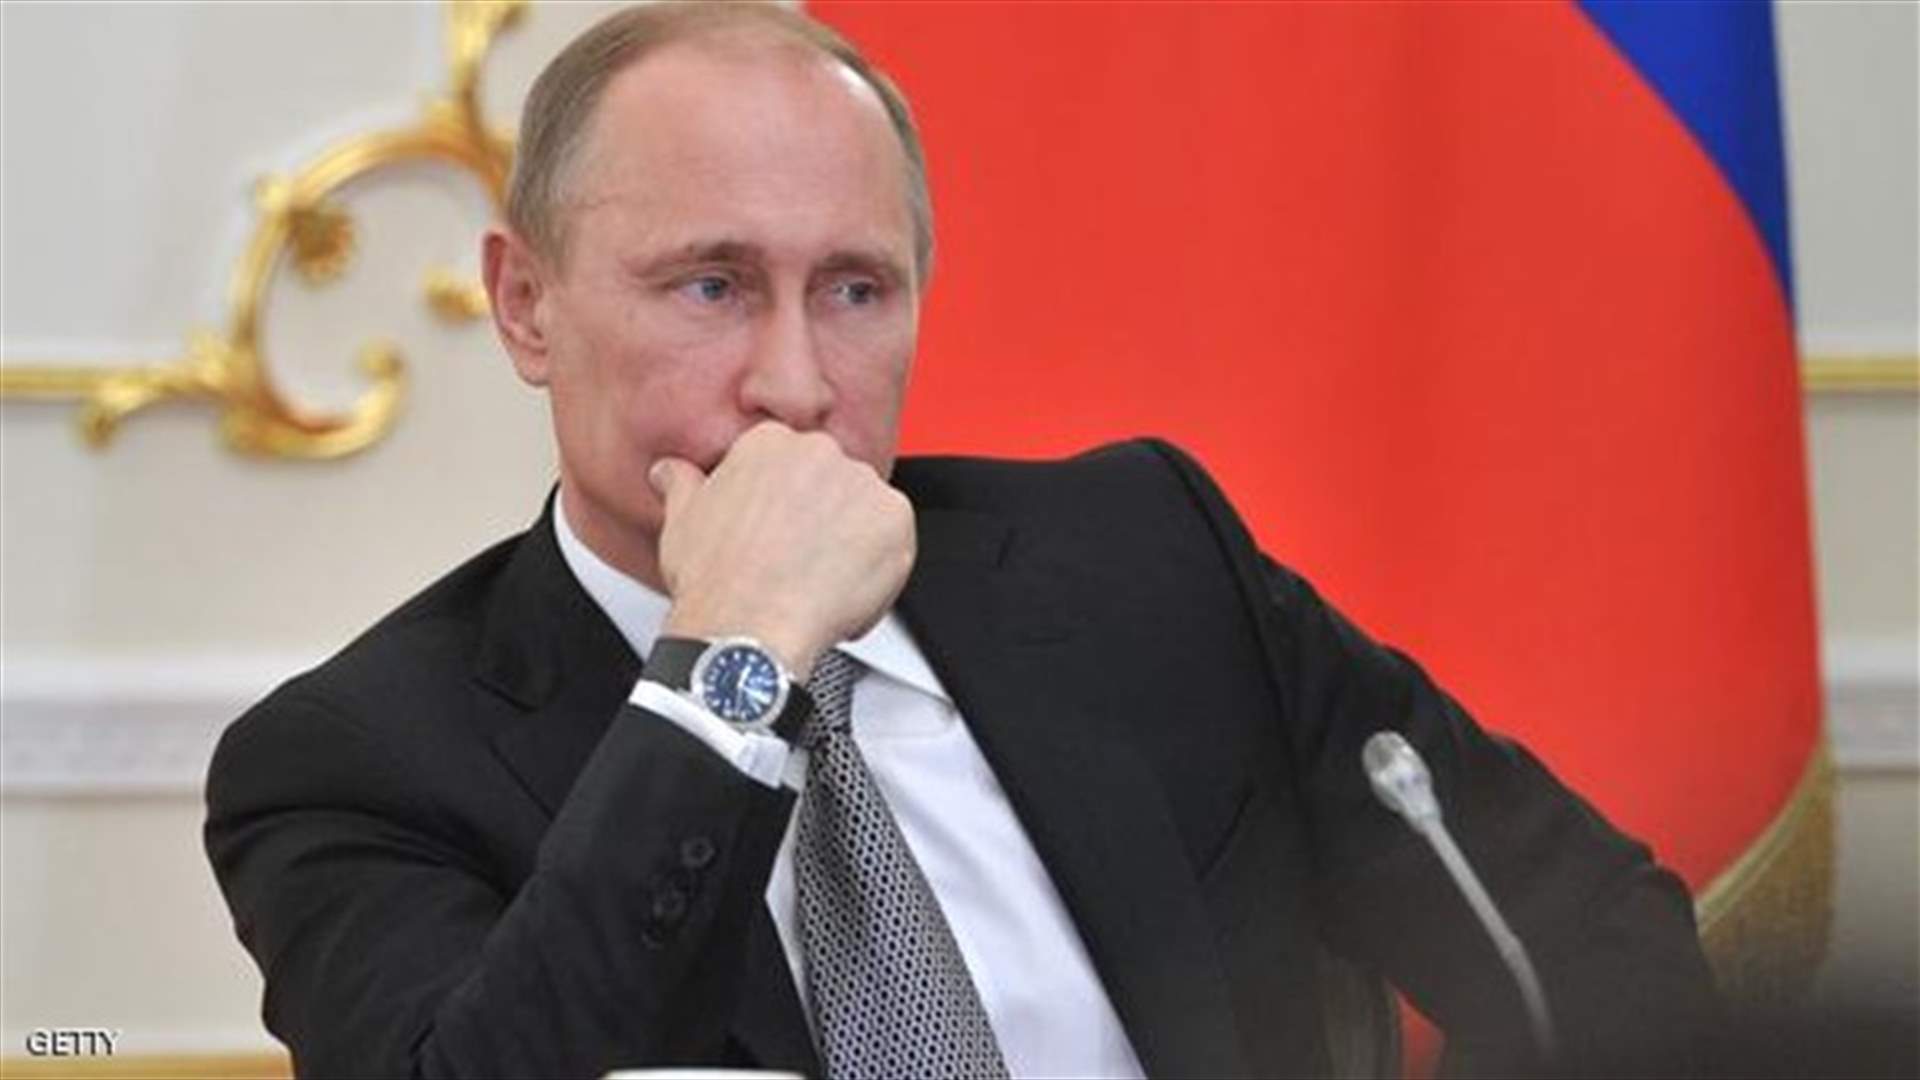 بوتين: روسيا لا تسعى للصدام مع الولايات المتحدة